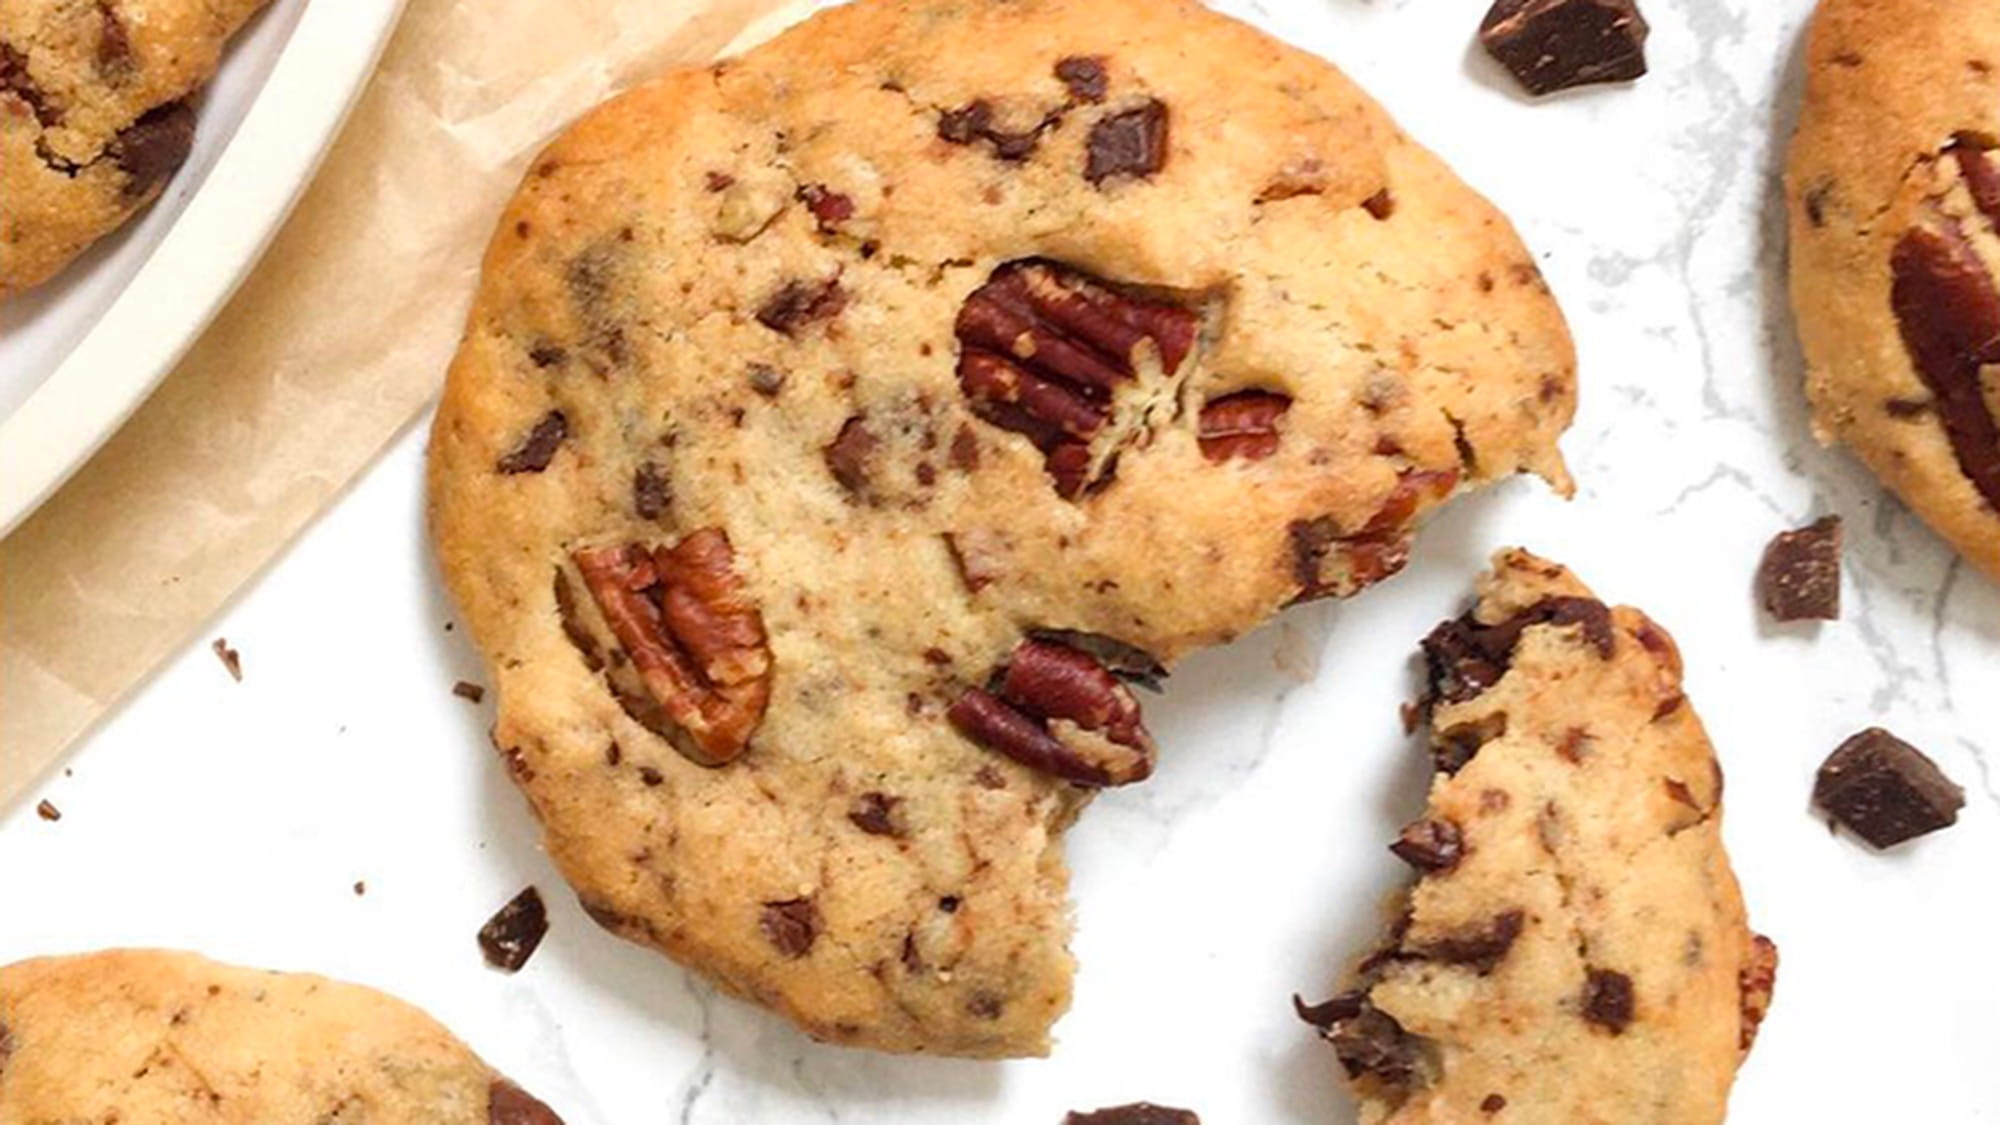 Ma recette des cookies aux pépites de chocolat - Le blog de Kline